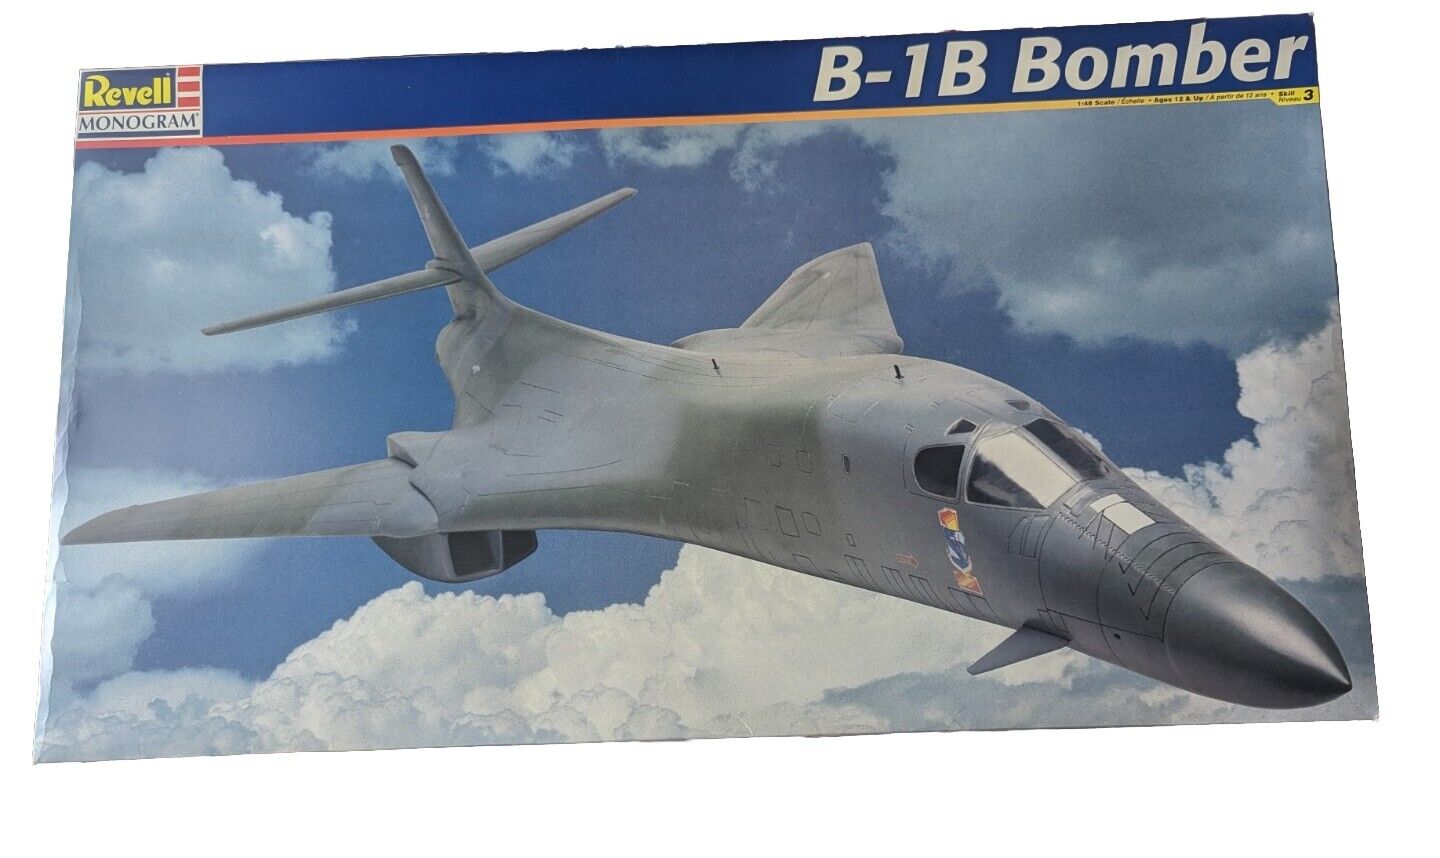 B-1B BOMBER REVELL MONOGRAM SCALE 1:48 NEW IN BOX MODEL KIT VINTAGE 1998